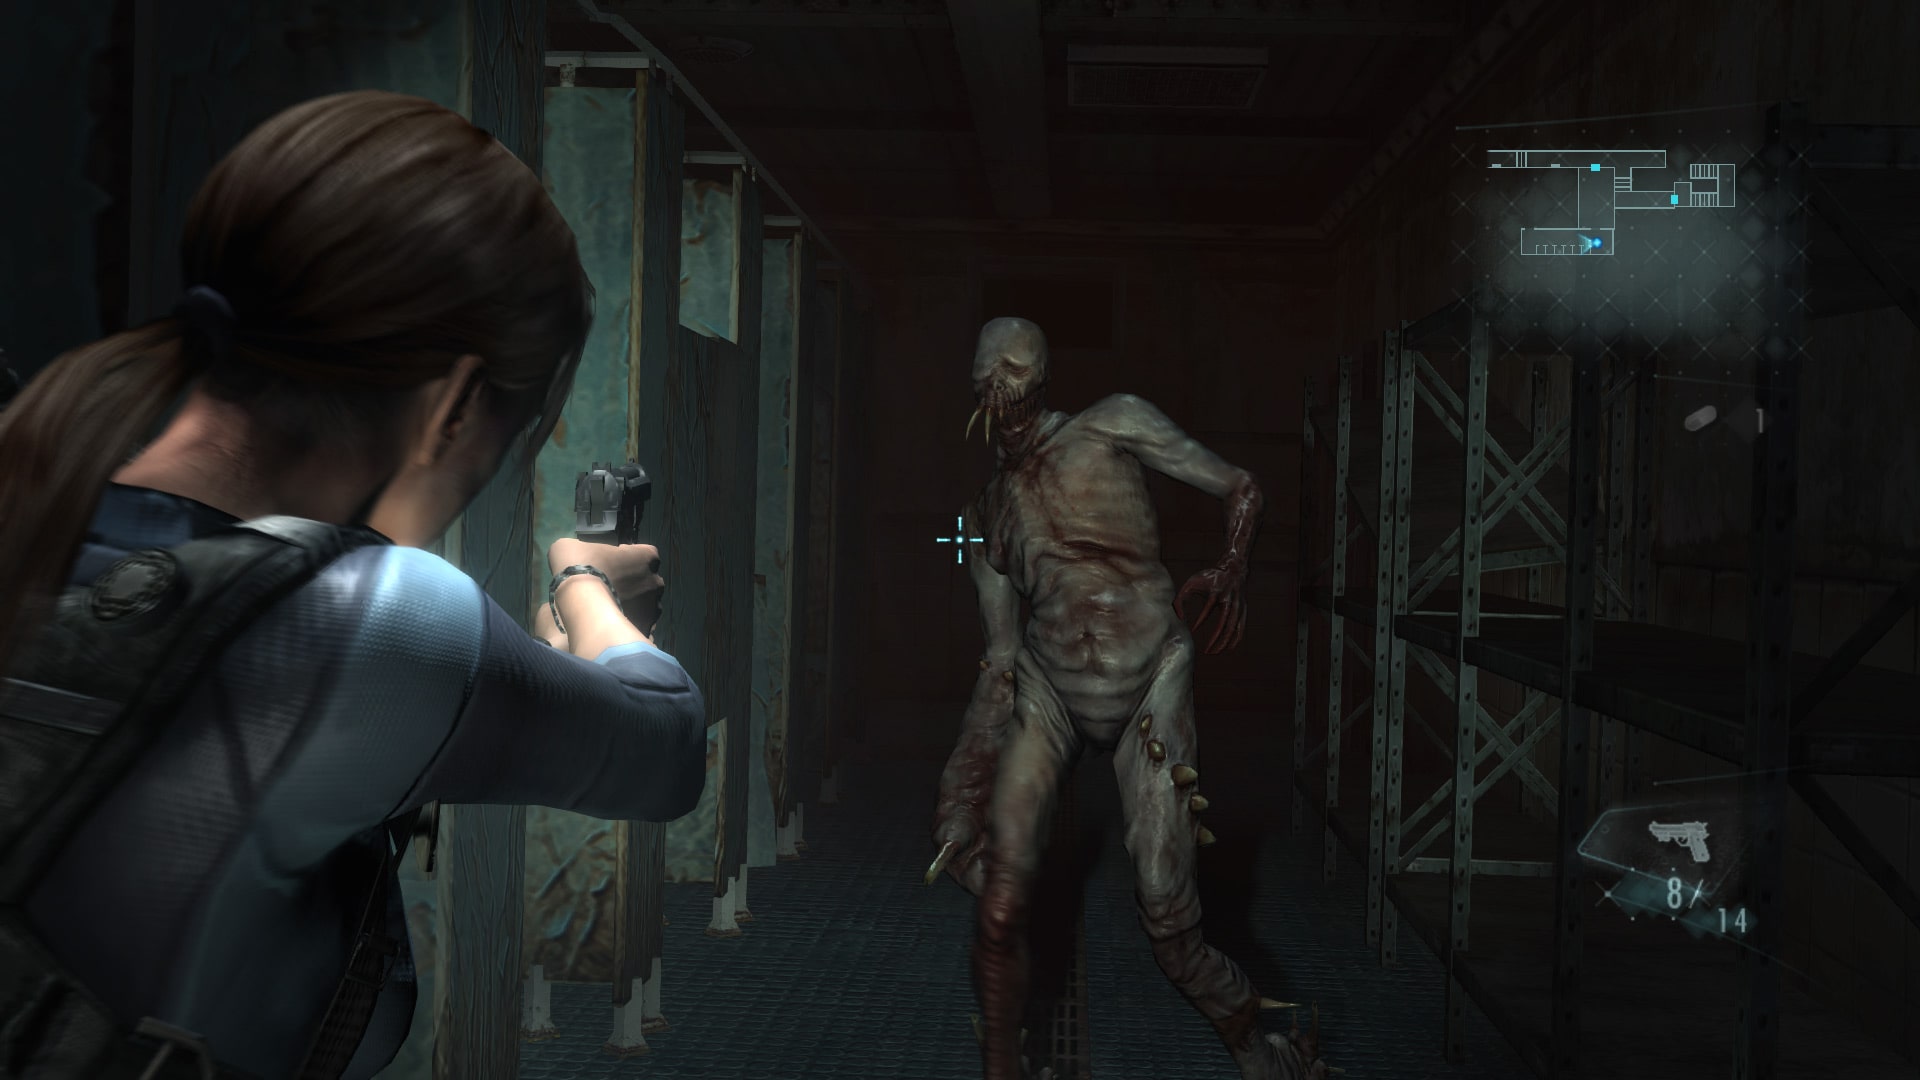 Jogo Resident Evil Revelations 2 PS4 Capcom em Promoção é no Bondfaro